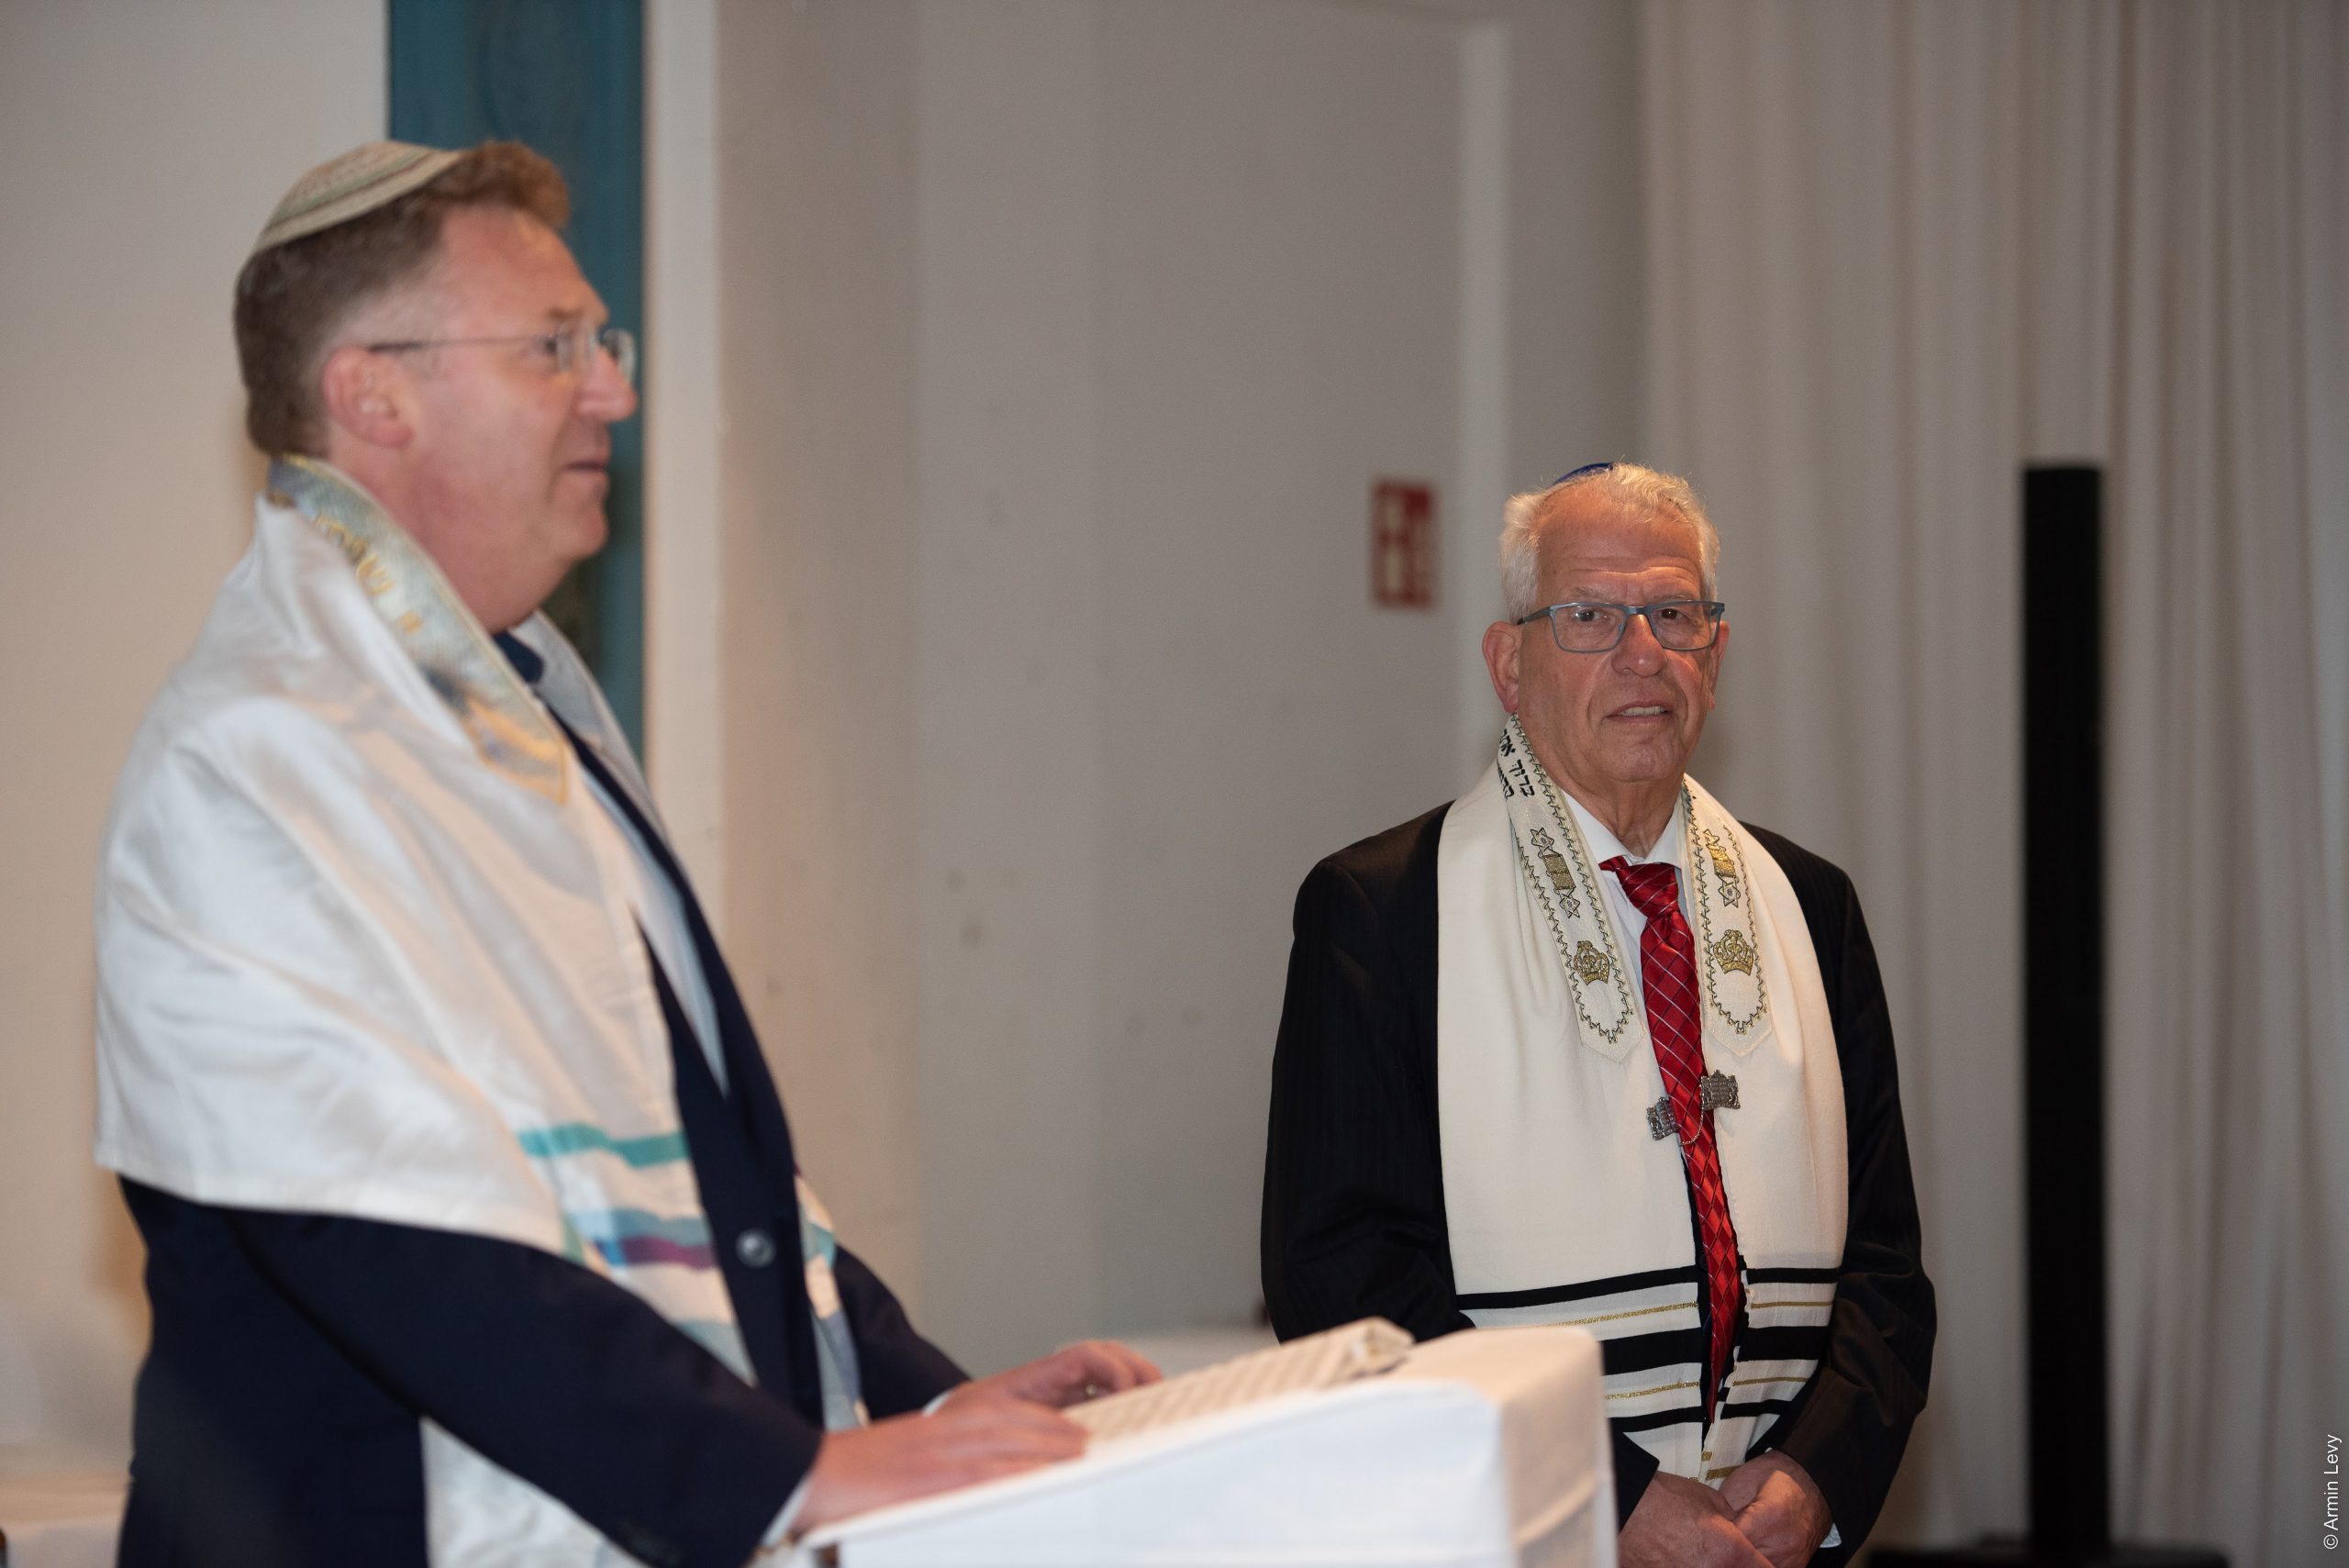 Reformsynagoge: Europäische Lutheraner zeichnen Rabbiner Lengyel aus